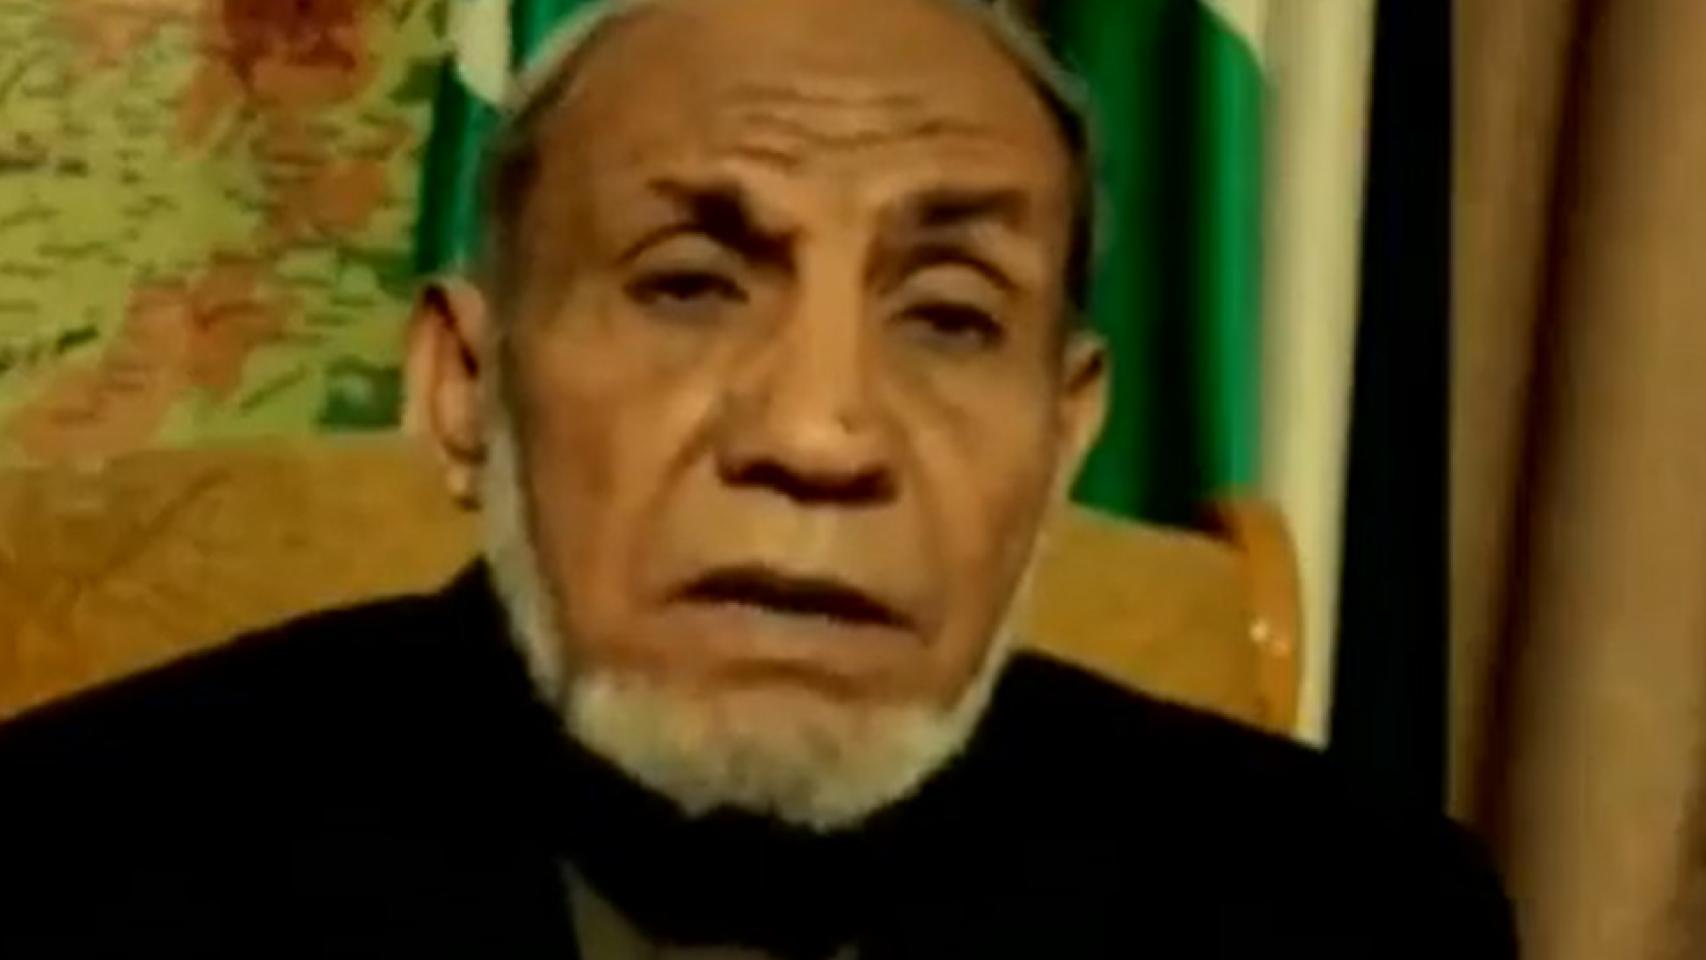 Mahmoud Al-Zahar